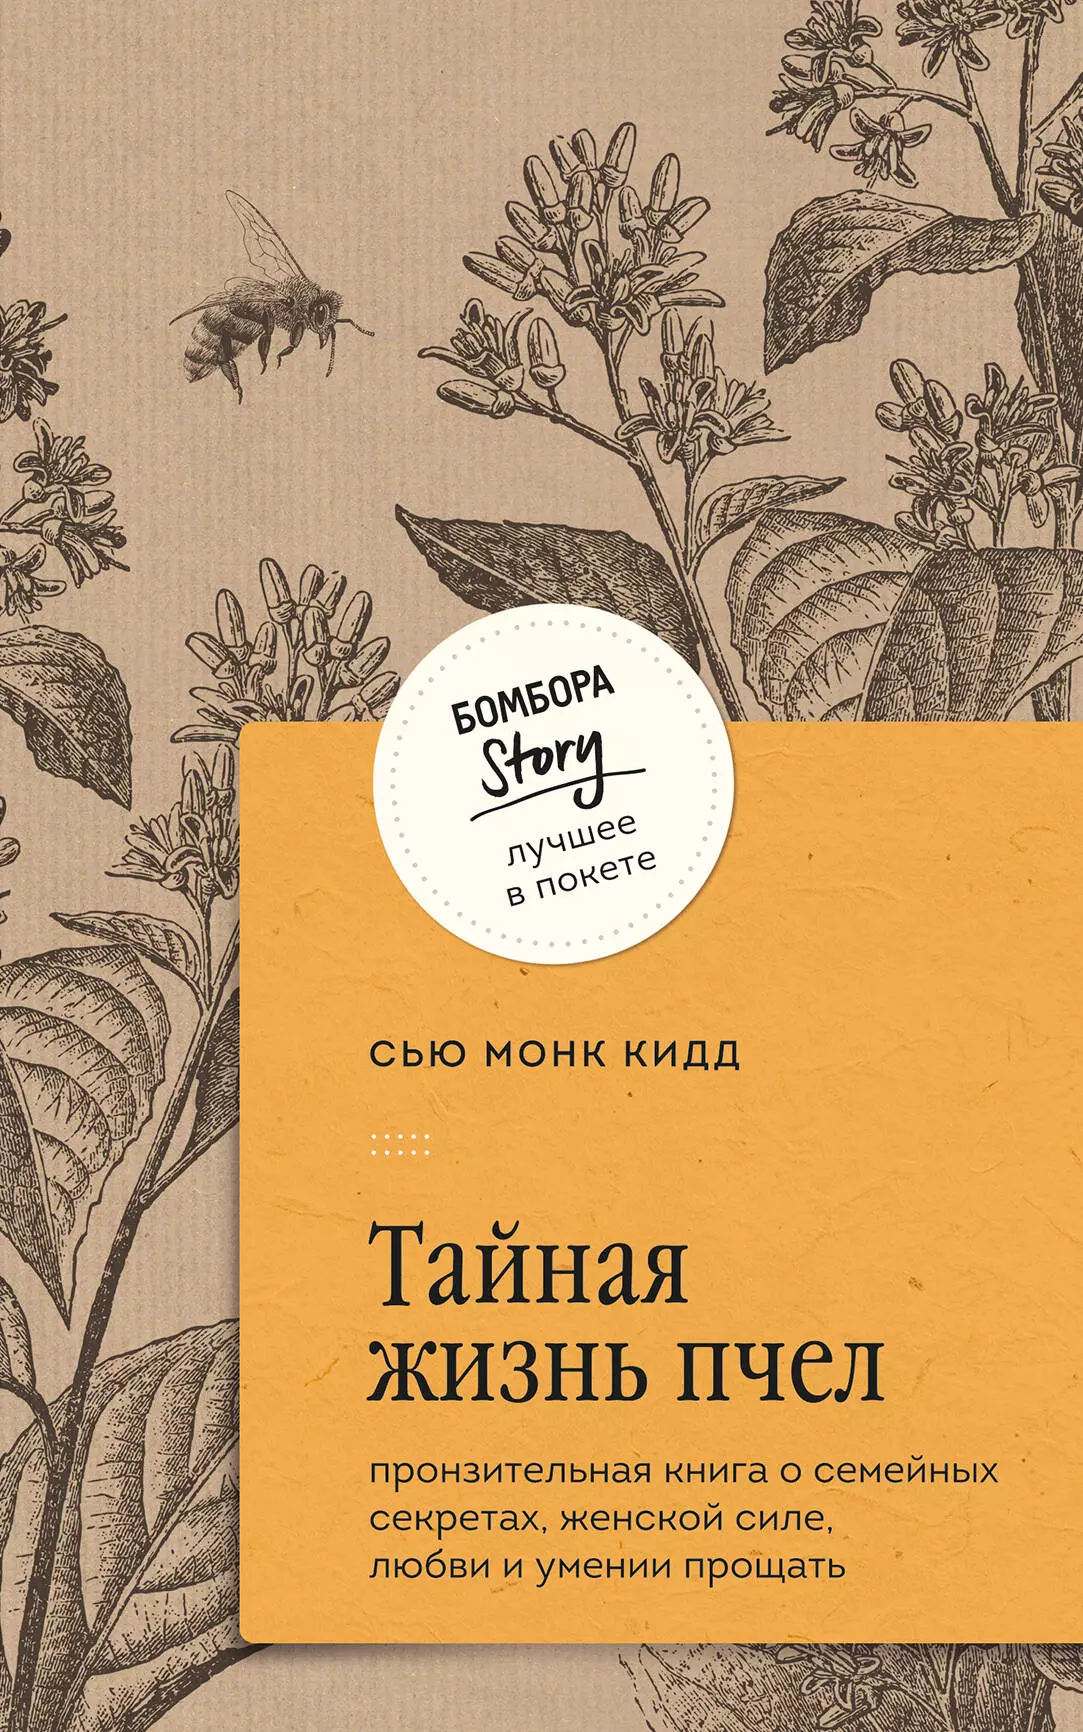 Кидд Сью Монк Тайная жизнь пчел: пронзительная книга о семейных секретах, женской силе, любви и умении прощать